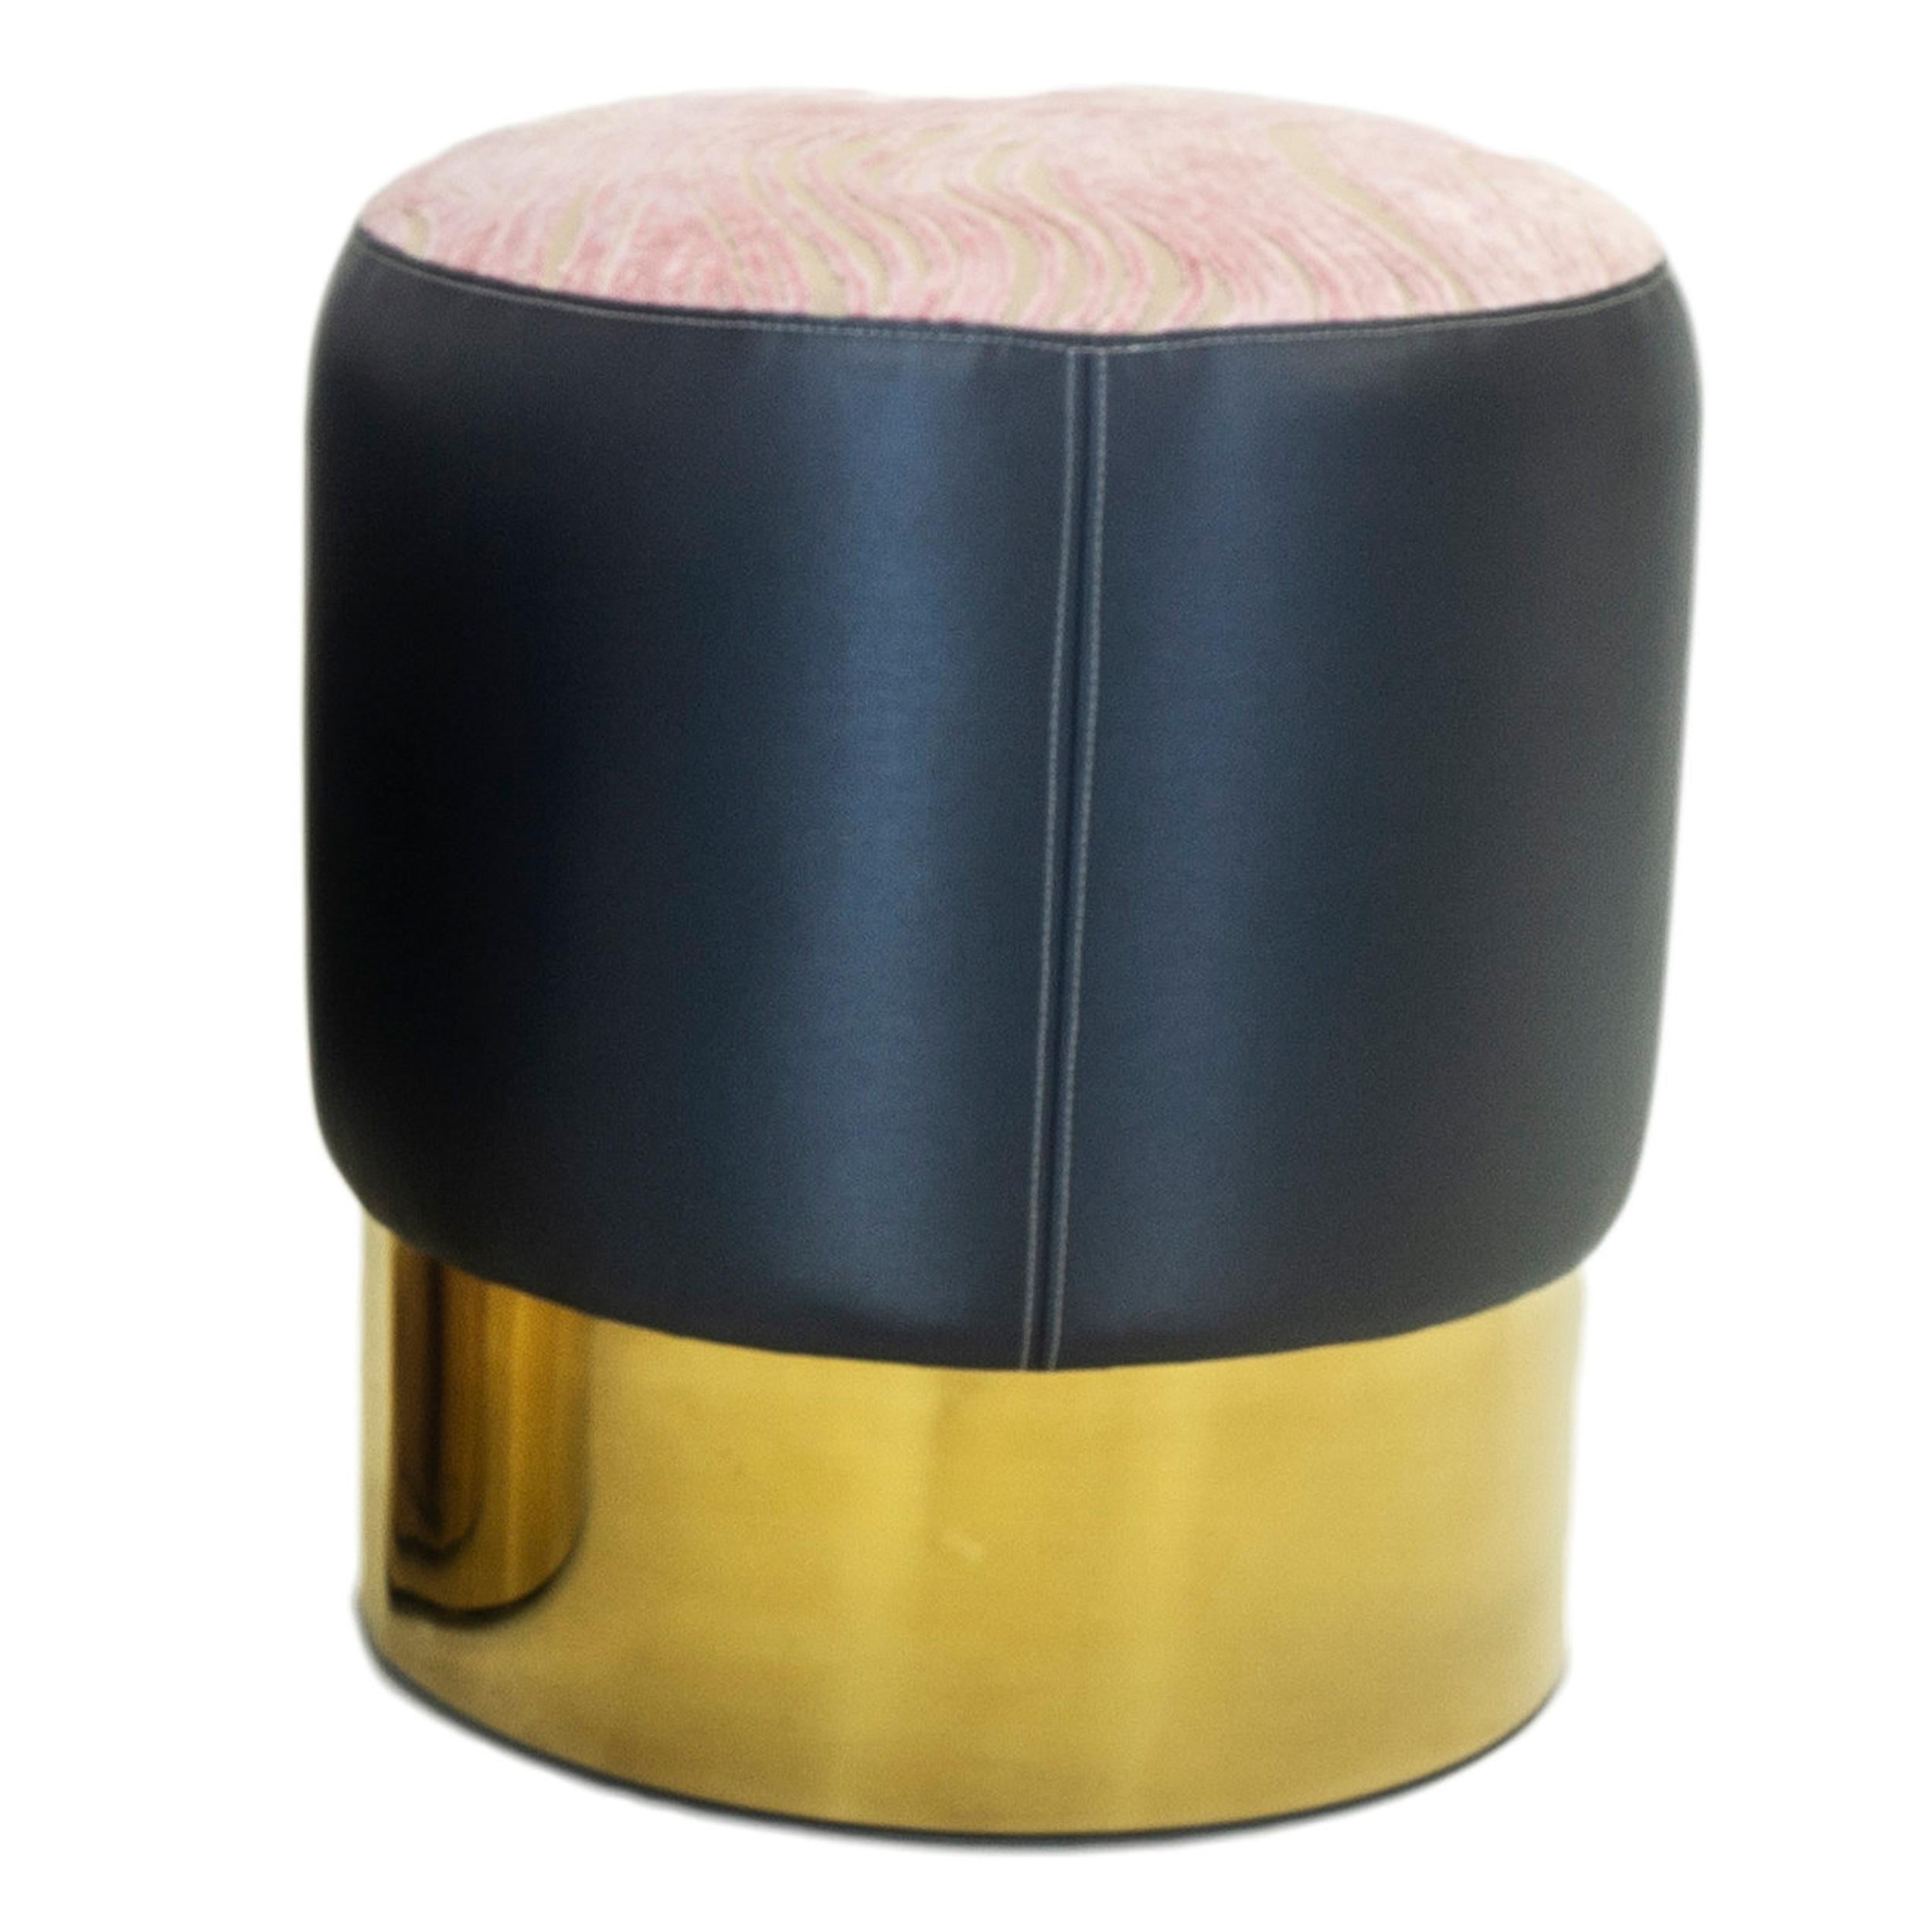 Notre petit ottoman rond est l'accent de finition parfait qui peut être utilisé comme siège supplémentaire. Doté d'une base ronde aux finitions dorées, il est tapissé d'un vinyle bleu marine et d'un velours coupé rose à motif tourbillonnant sur le